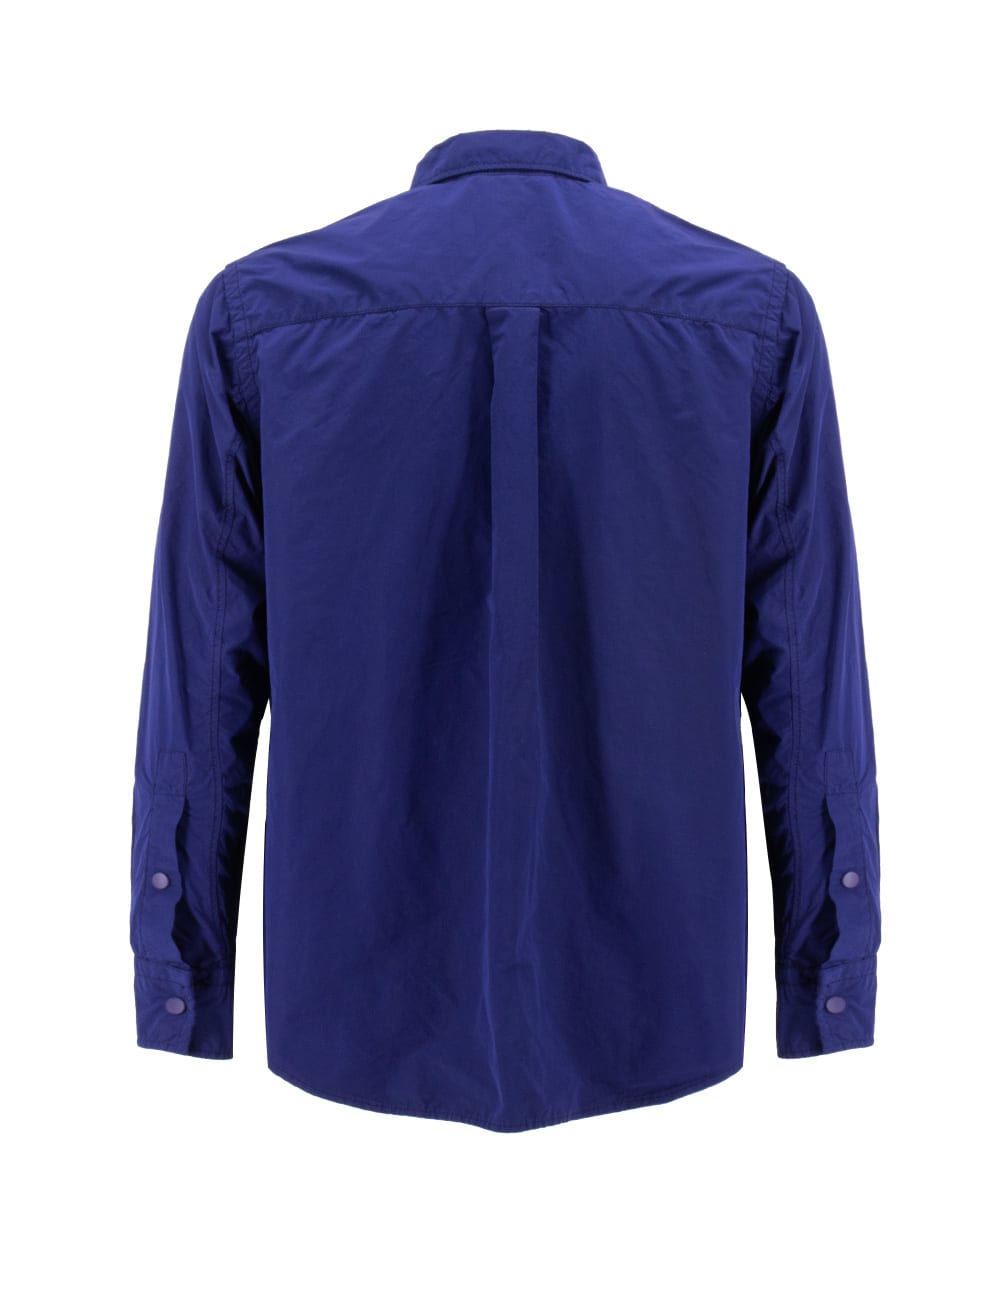 Shop Aspesi Jacket In Blue